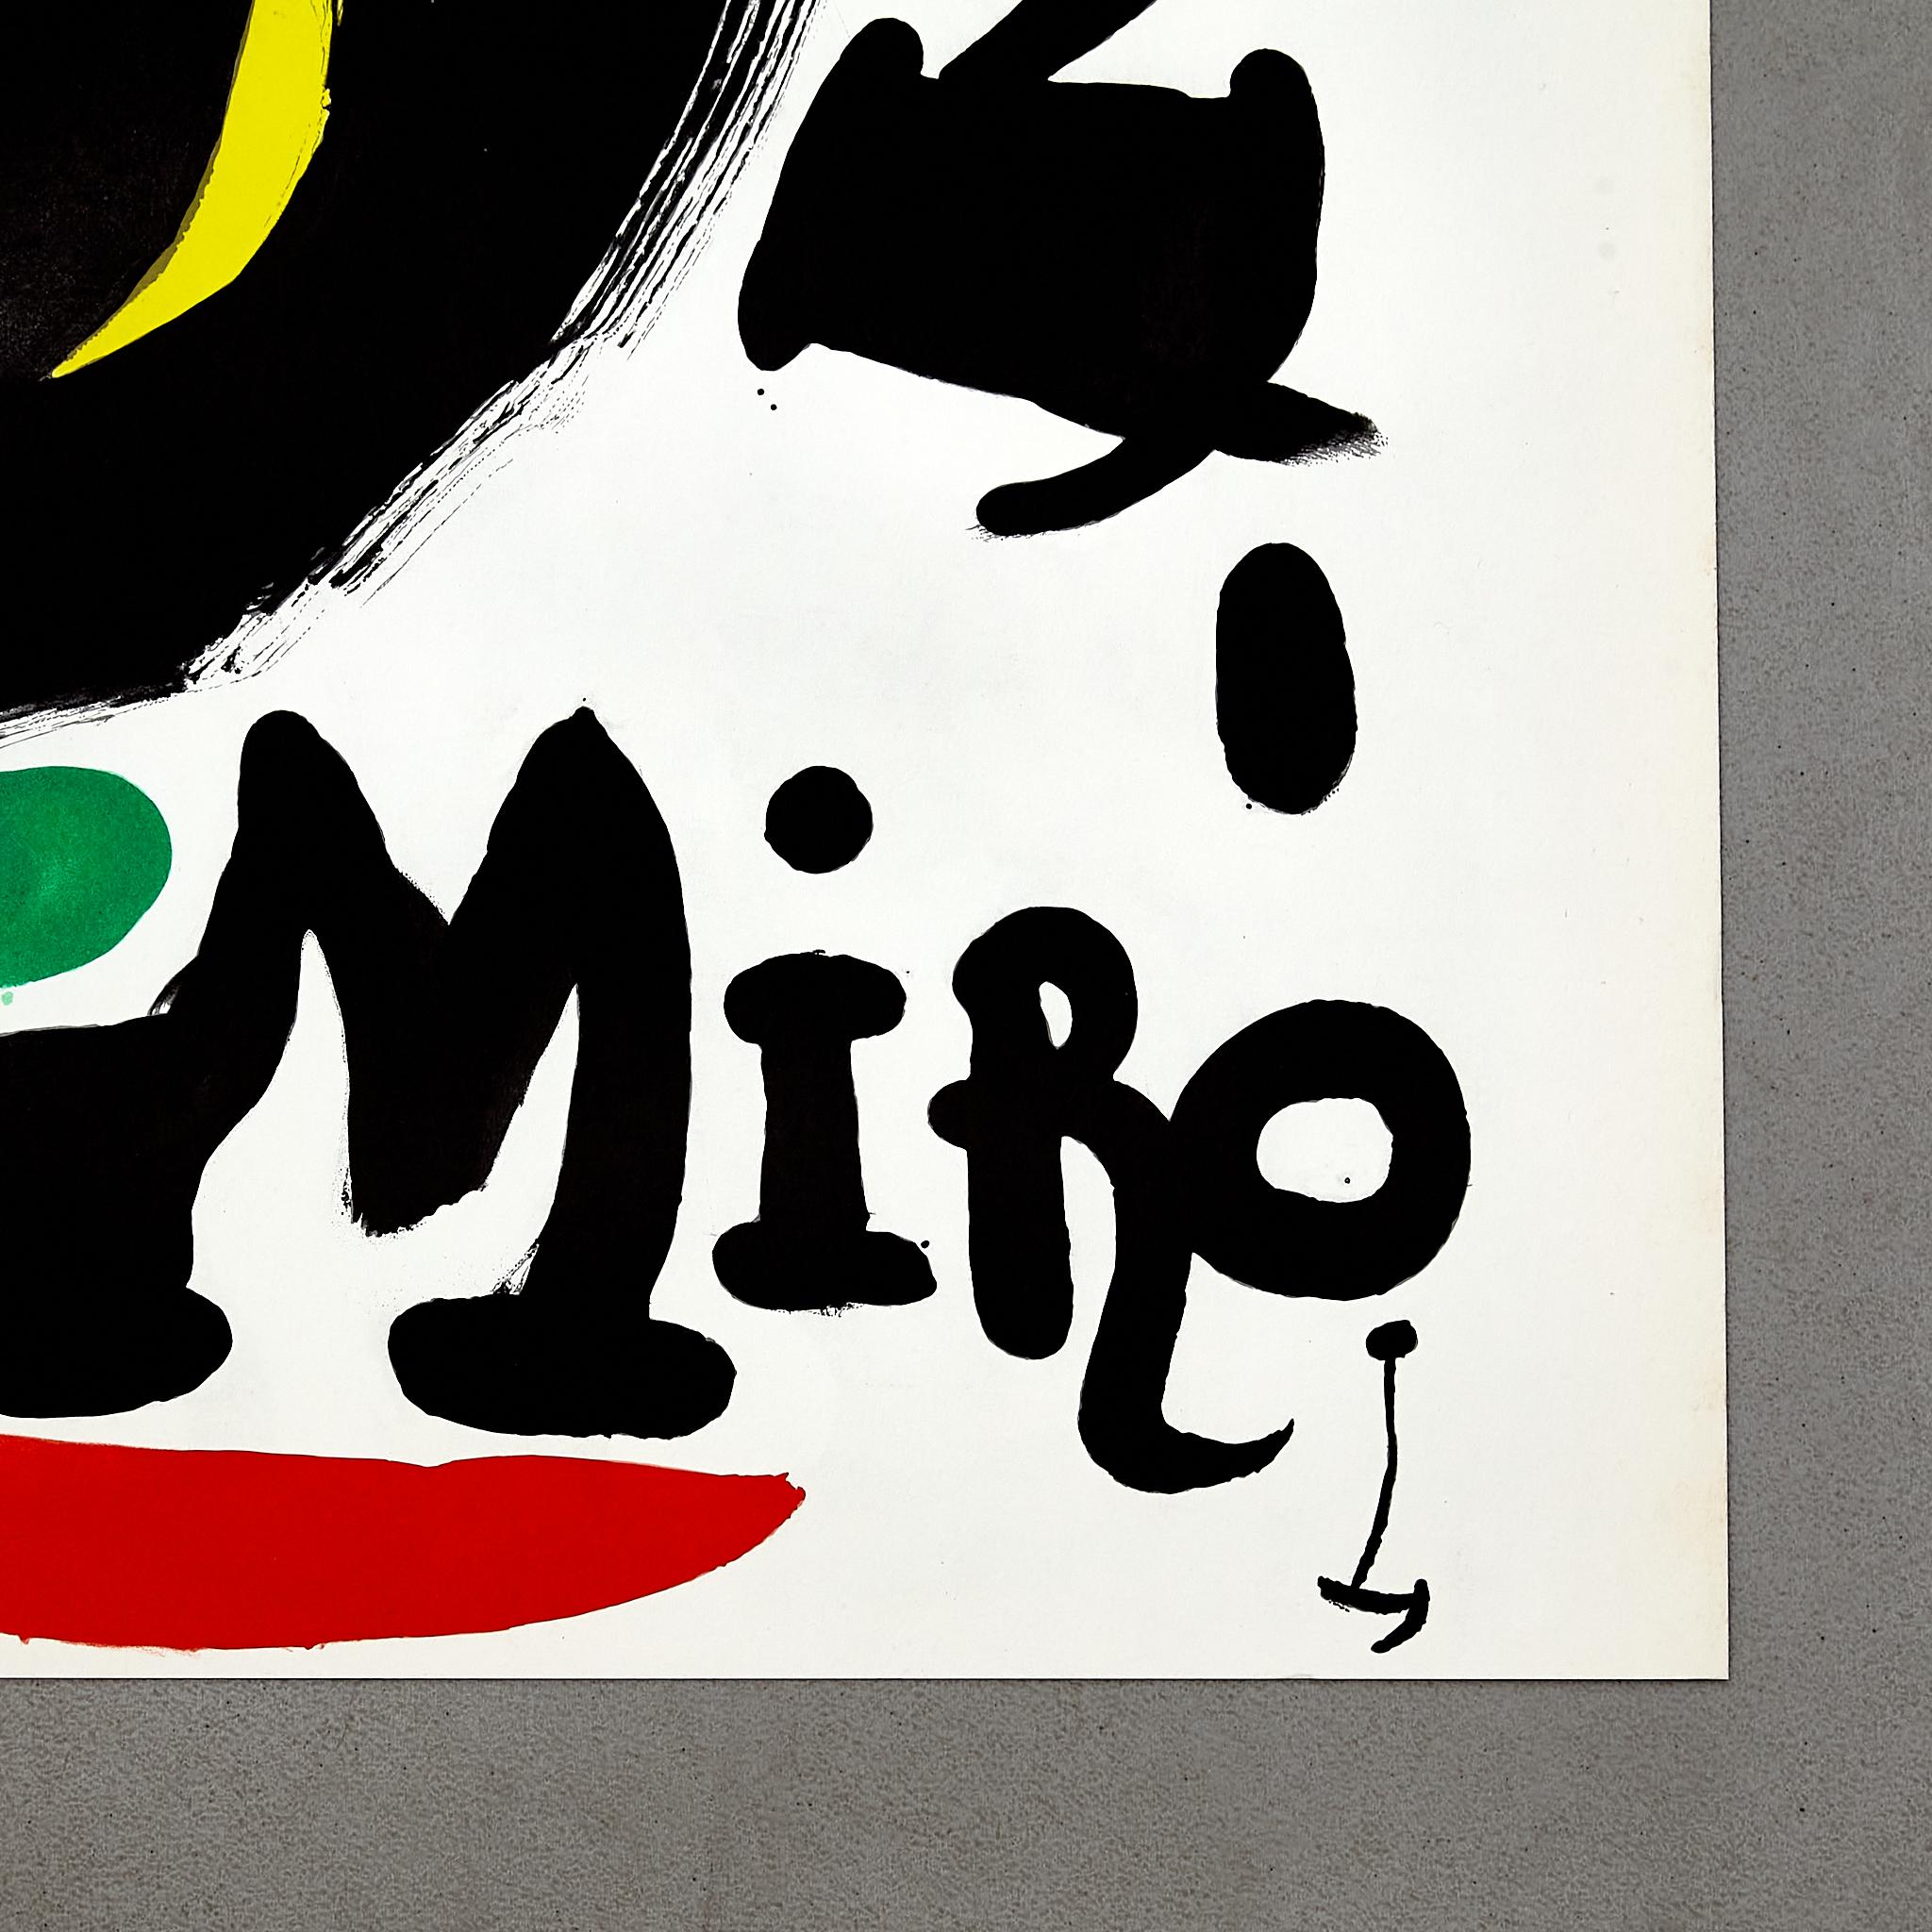  Hochwertige Farblithografie von Joan Miró, um 1960. (Papier)